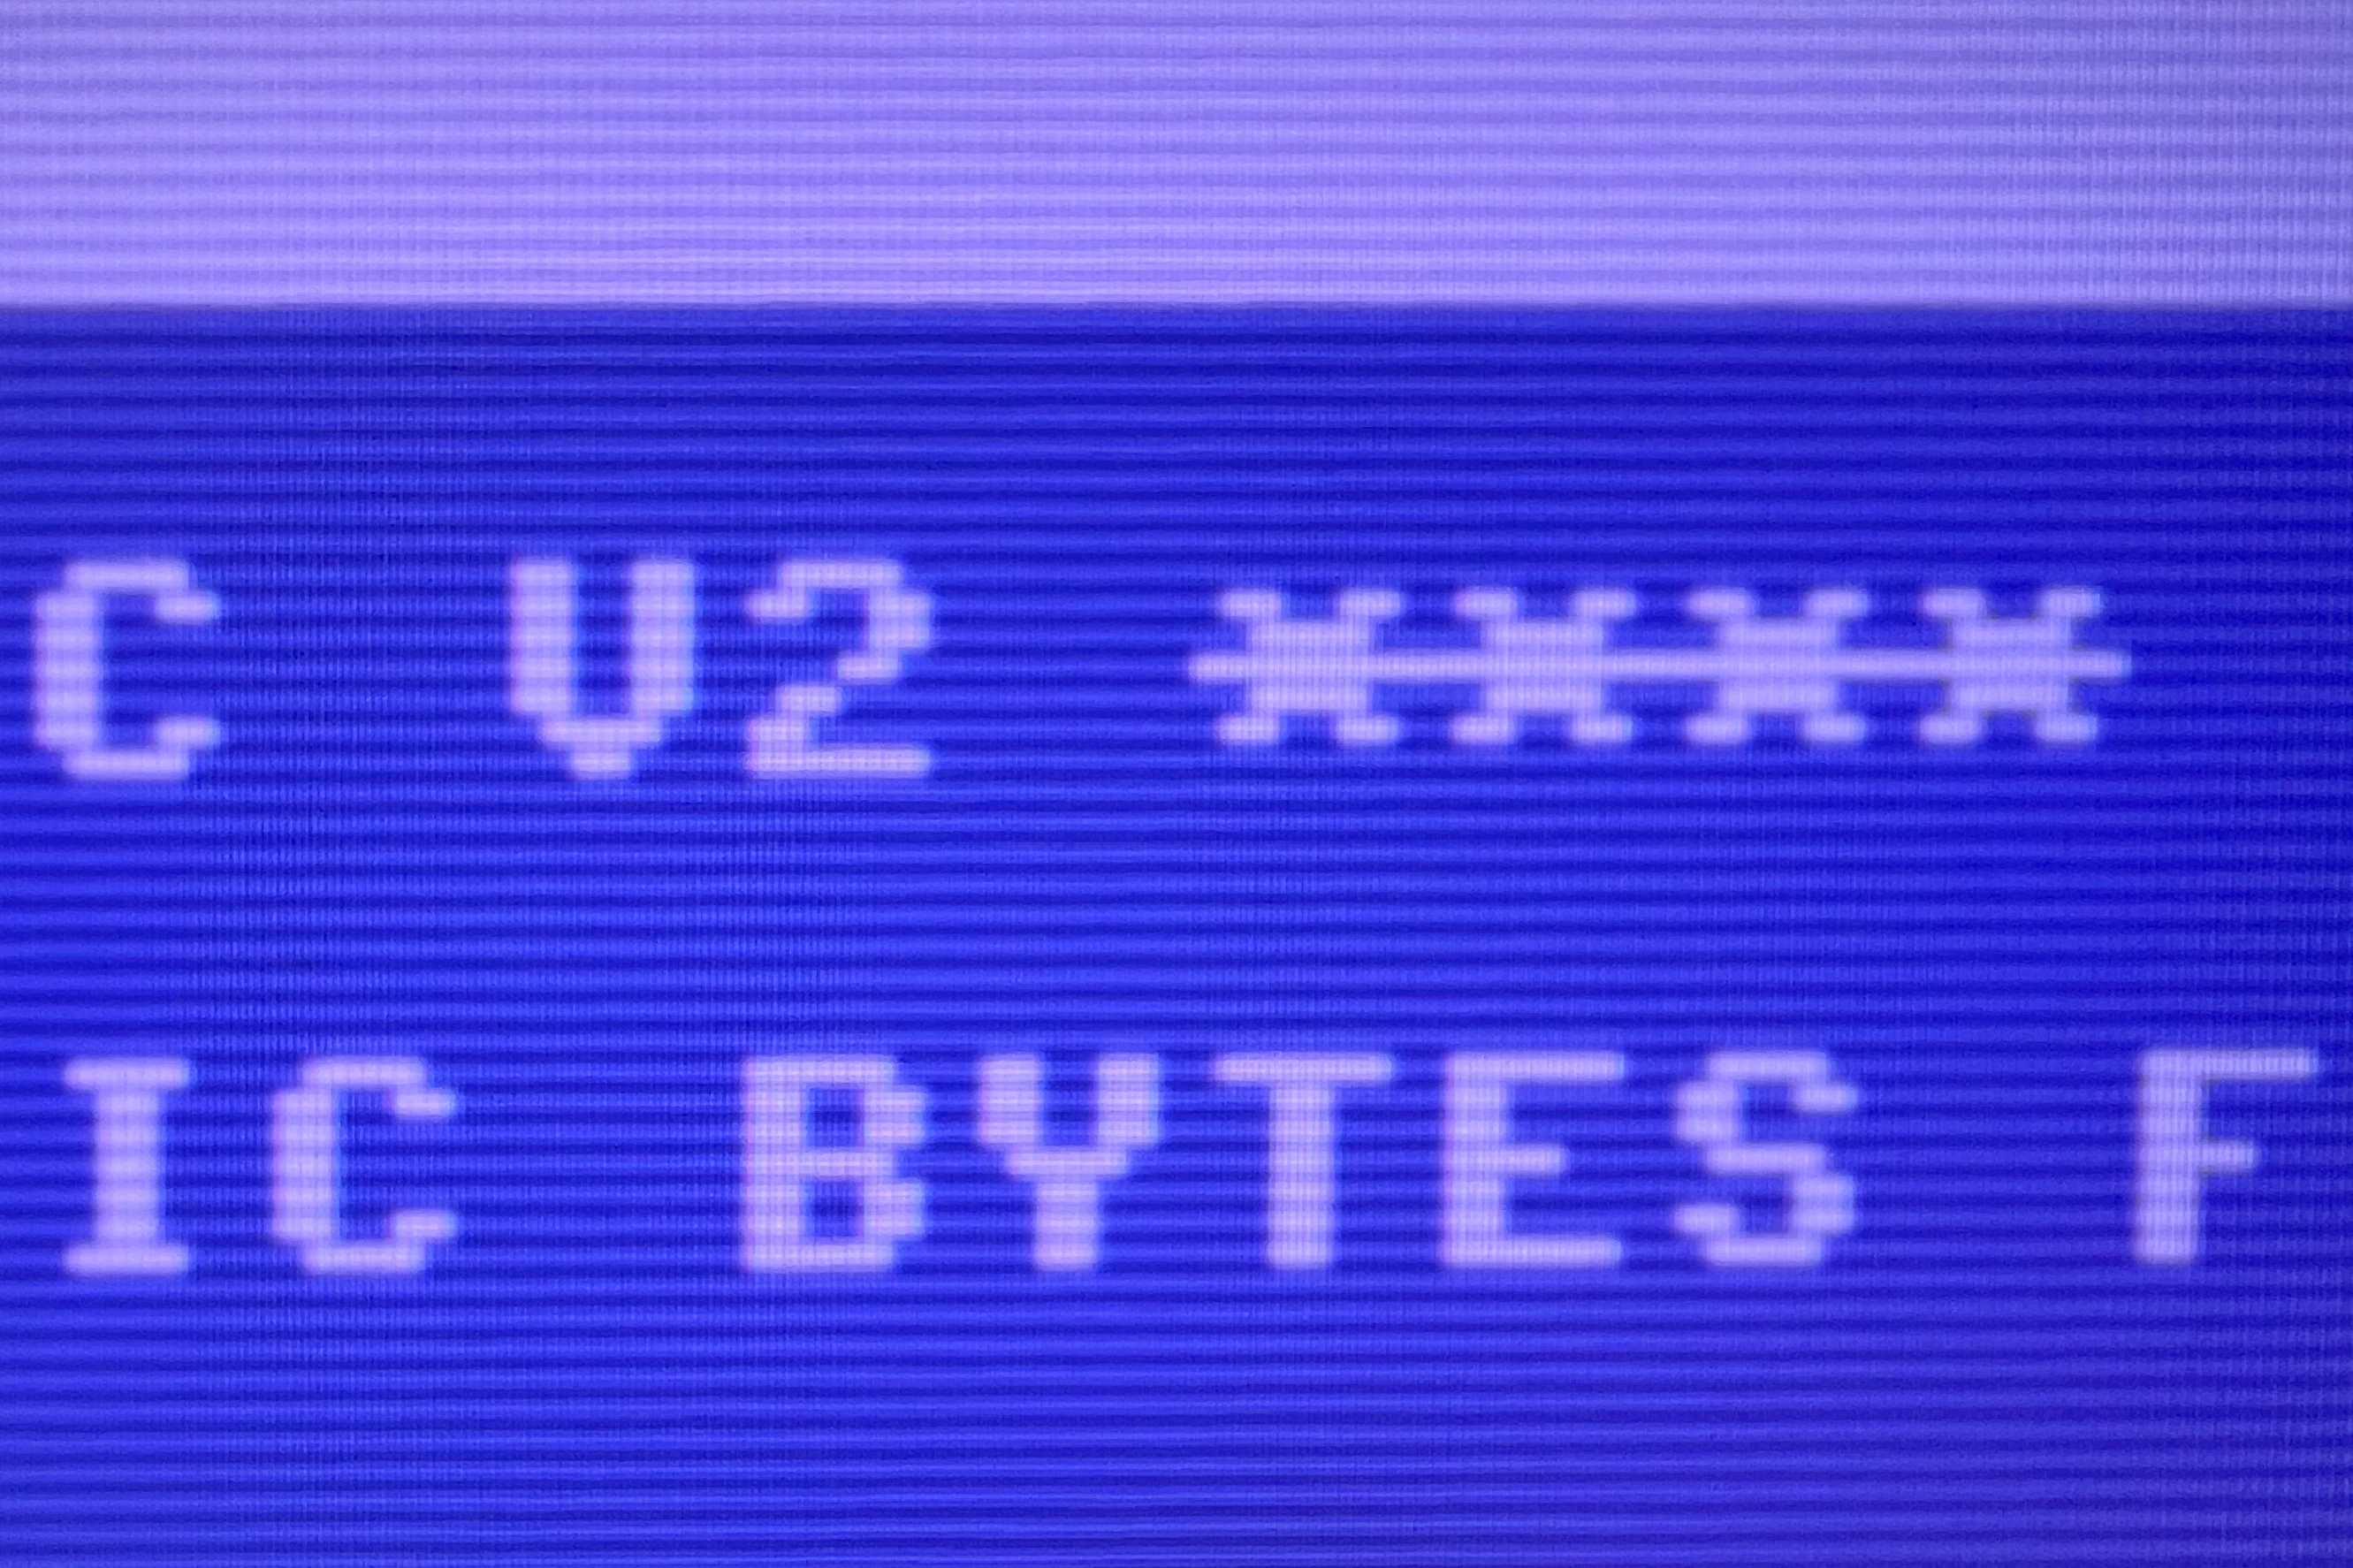 C64 MegaAGS preset